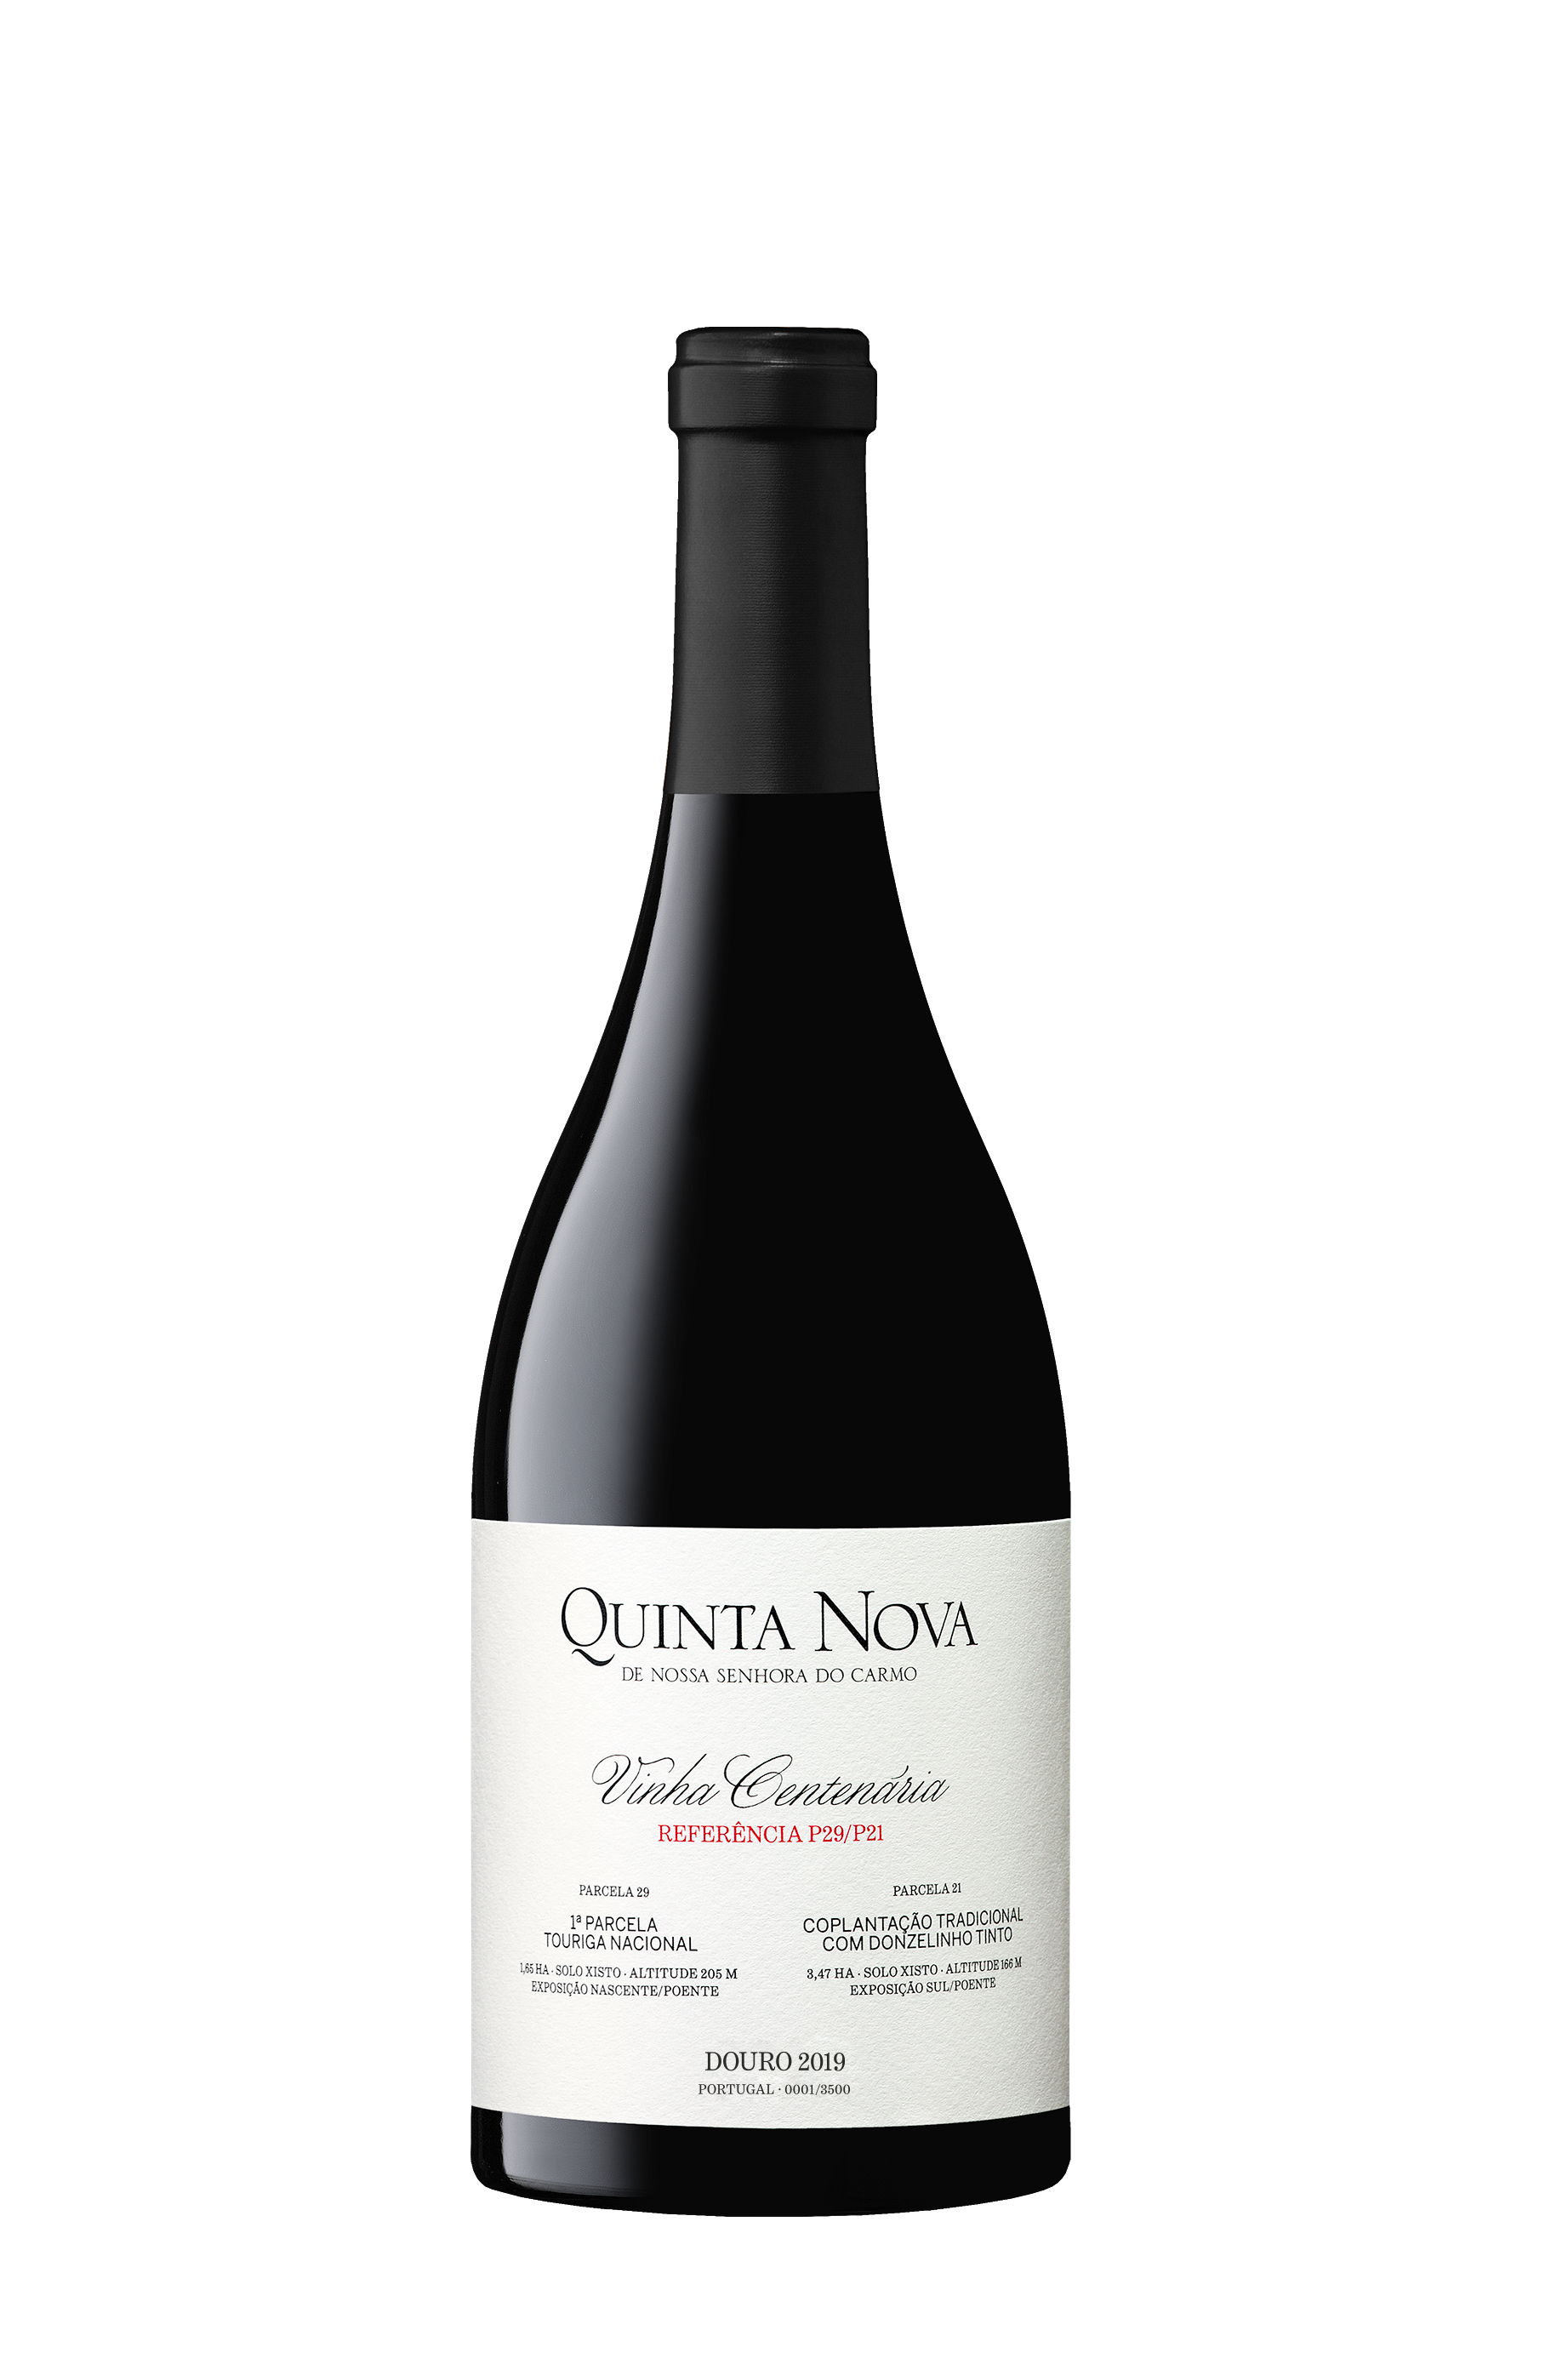 Quinta Nova Vinhas Centenárias P29/P21 2019 (153,33€ / litro) 